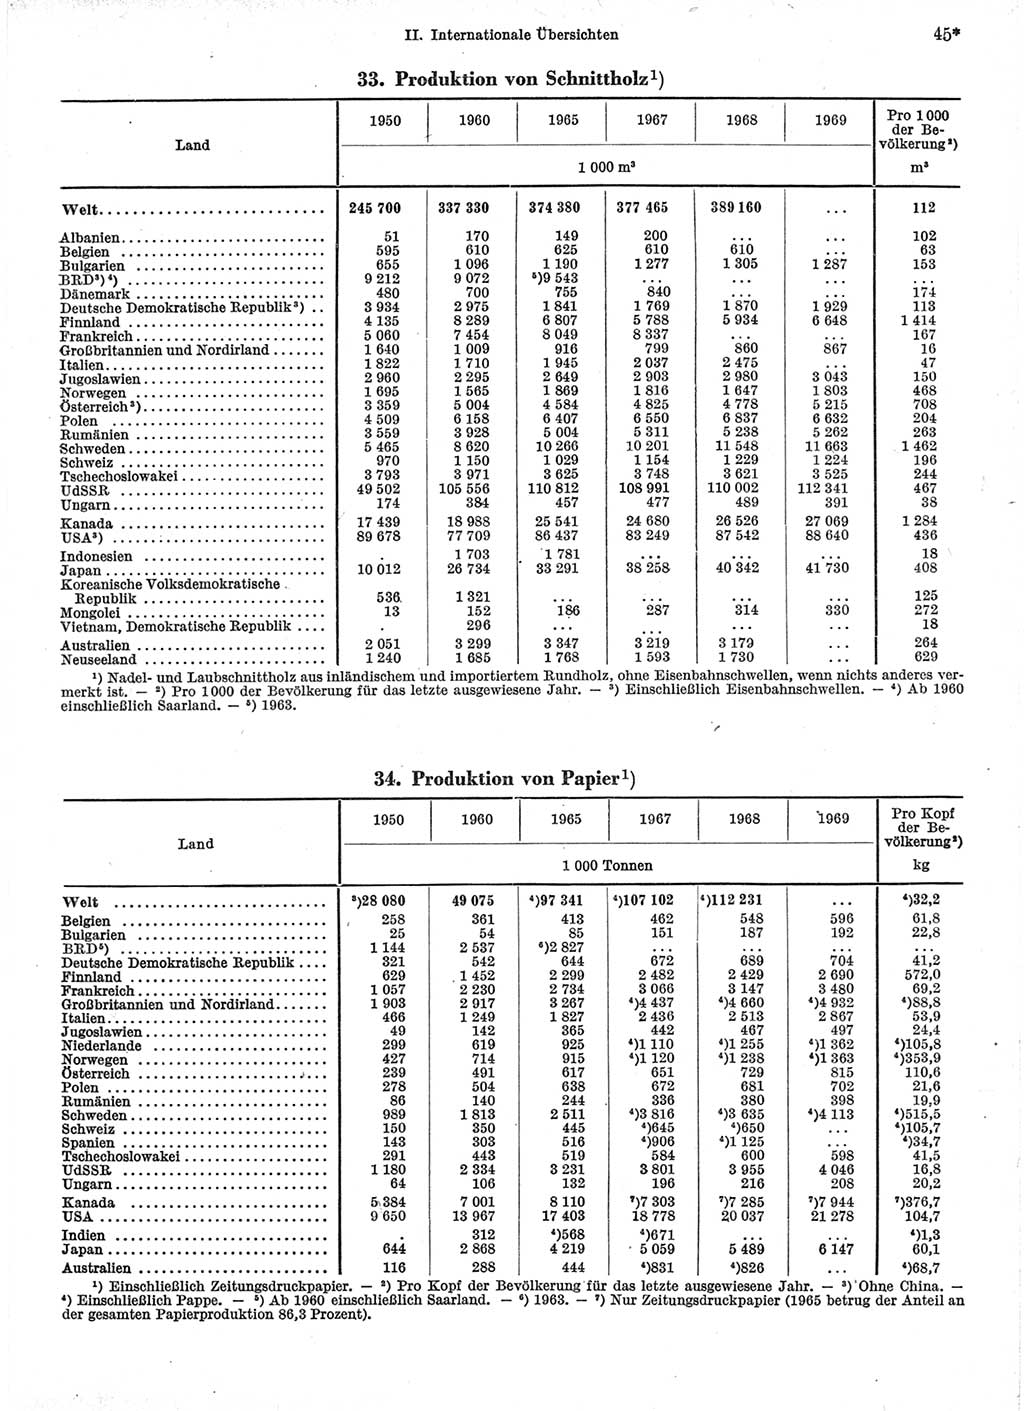 Statistisches Jahrbuch der Deutschen Demokratischen Republik (DDR) 1971, Seite 45 (Stat. Jb. DDR 1971, S. 45)